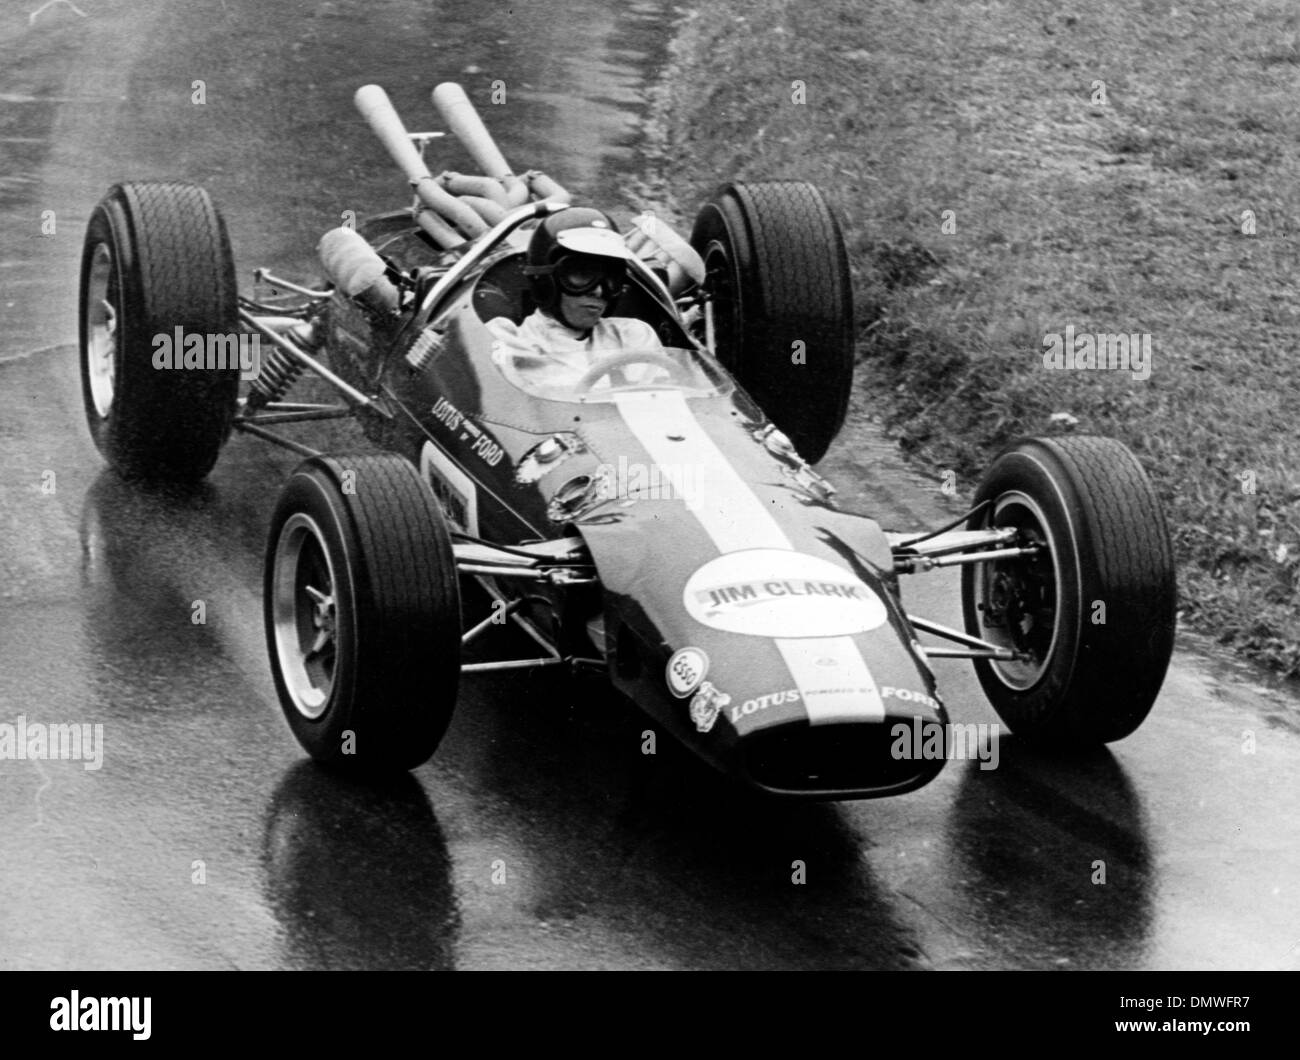 Aug 25, 1965 - Zurigo, Svizzera - File (foto) Jim Clark era un British Formula One racing driver. Spesso chiamato "Jimmy' da ventilatori, egli è stato il driver dominante della sua epoca, vincendo due campionati del mondo, nel 1963 e 1965. Al momento della sua morte aveva vinto più Gran Premi (25) e più pole position (33) rispetto a qualsiasi driver. Ha gareggiato anche a Indianapolis 500 cinque volte, Foto Stock